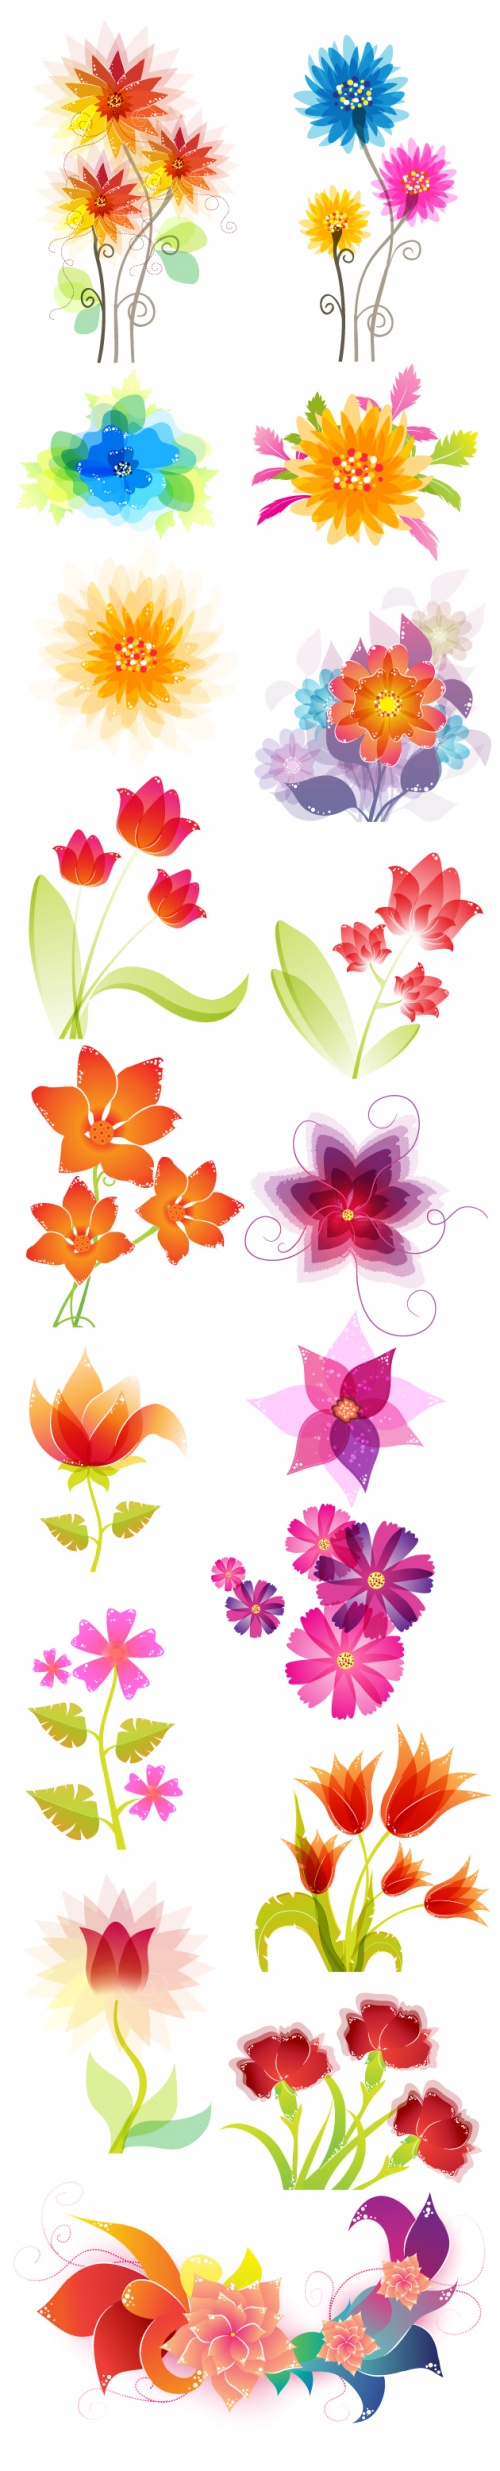 Designtnt - Vector Floral Ornaments Set 4